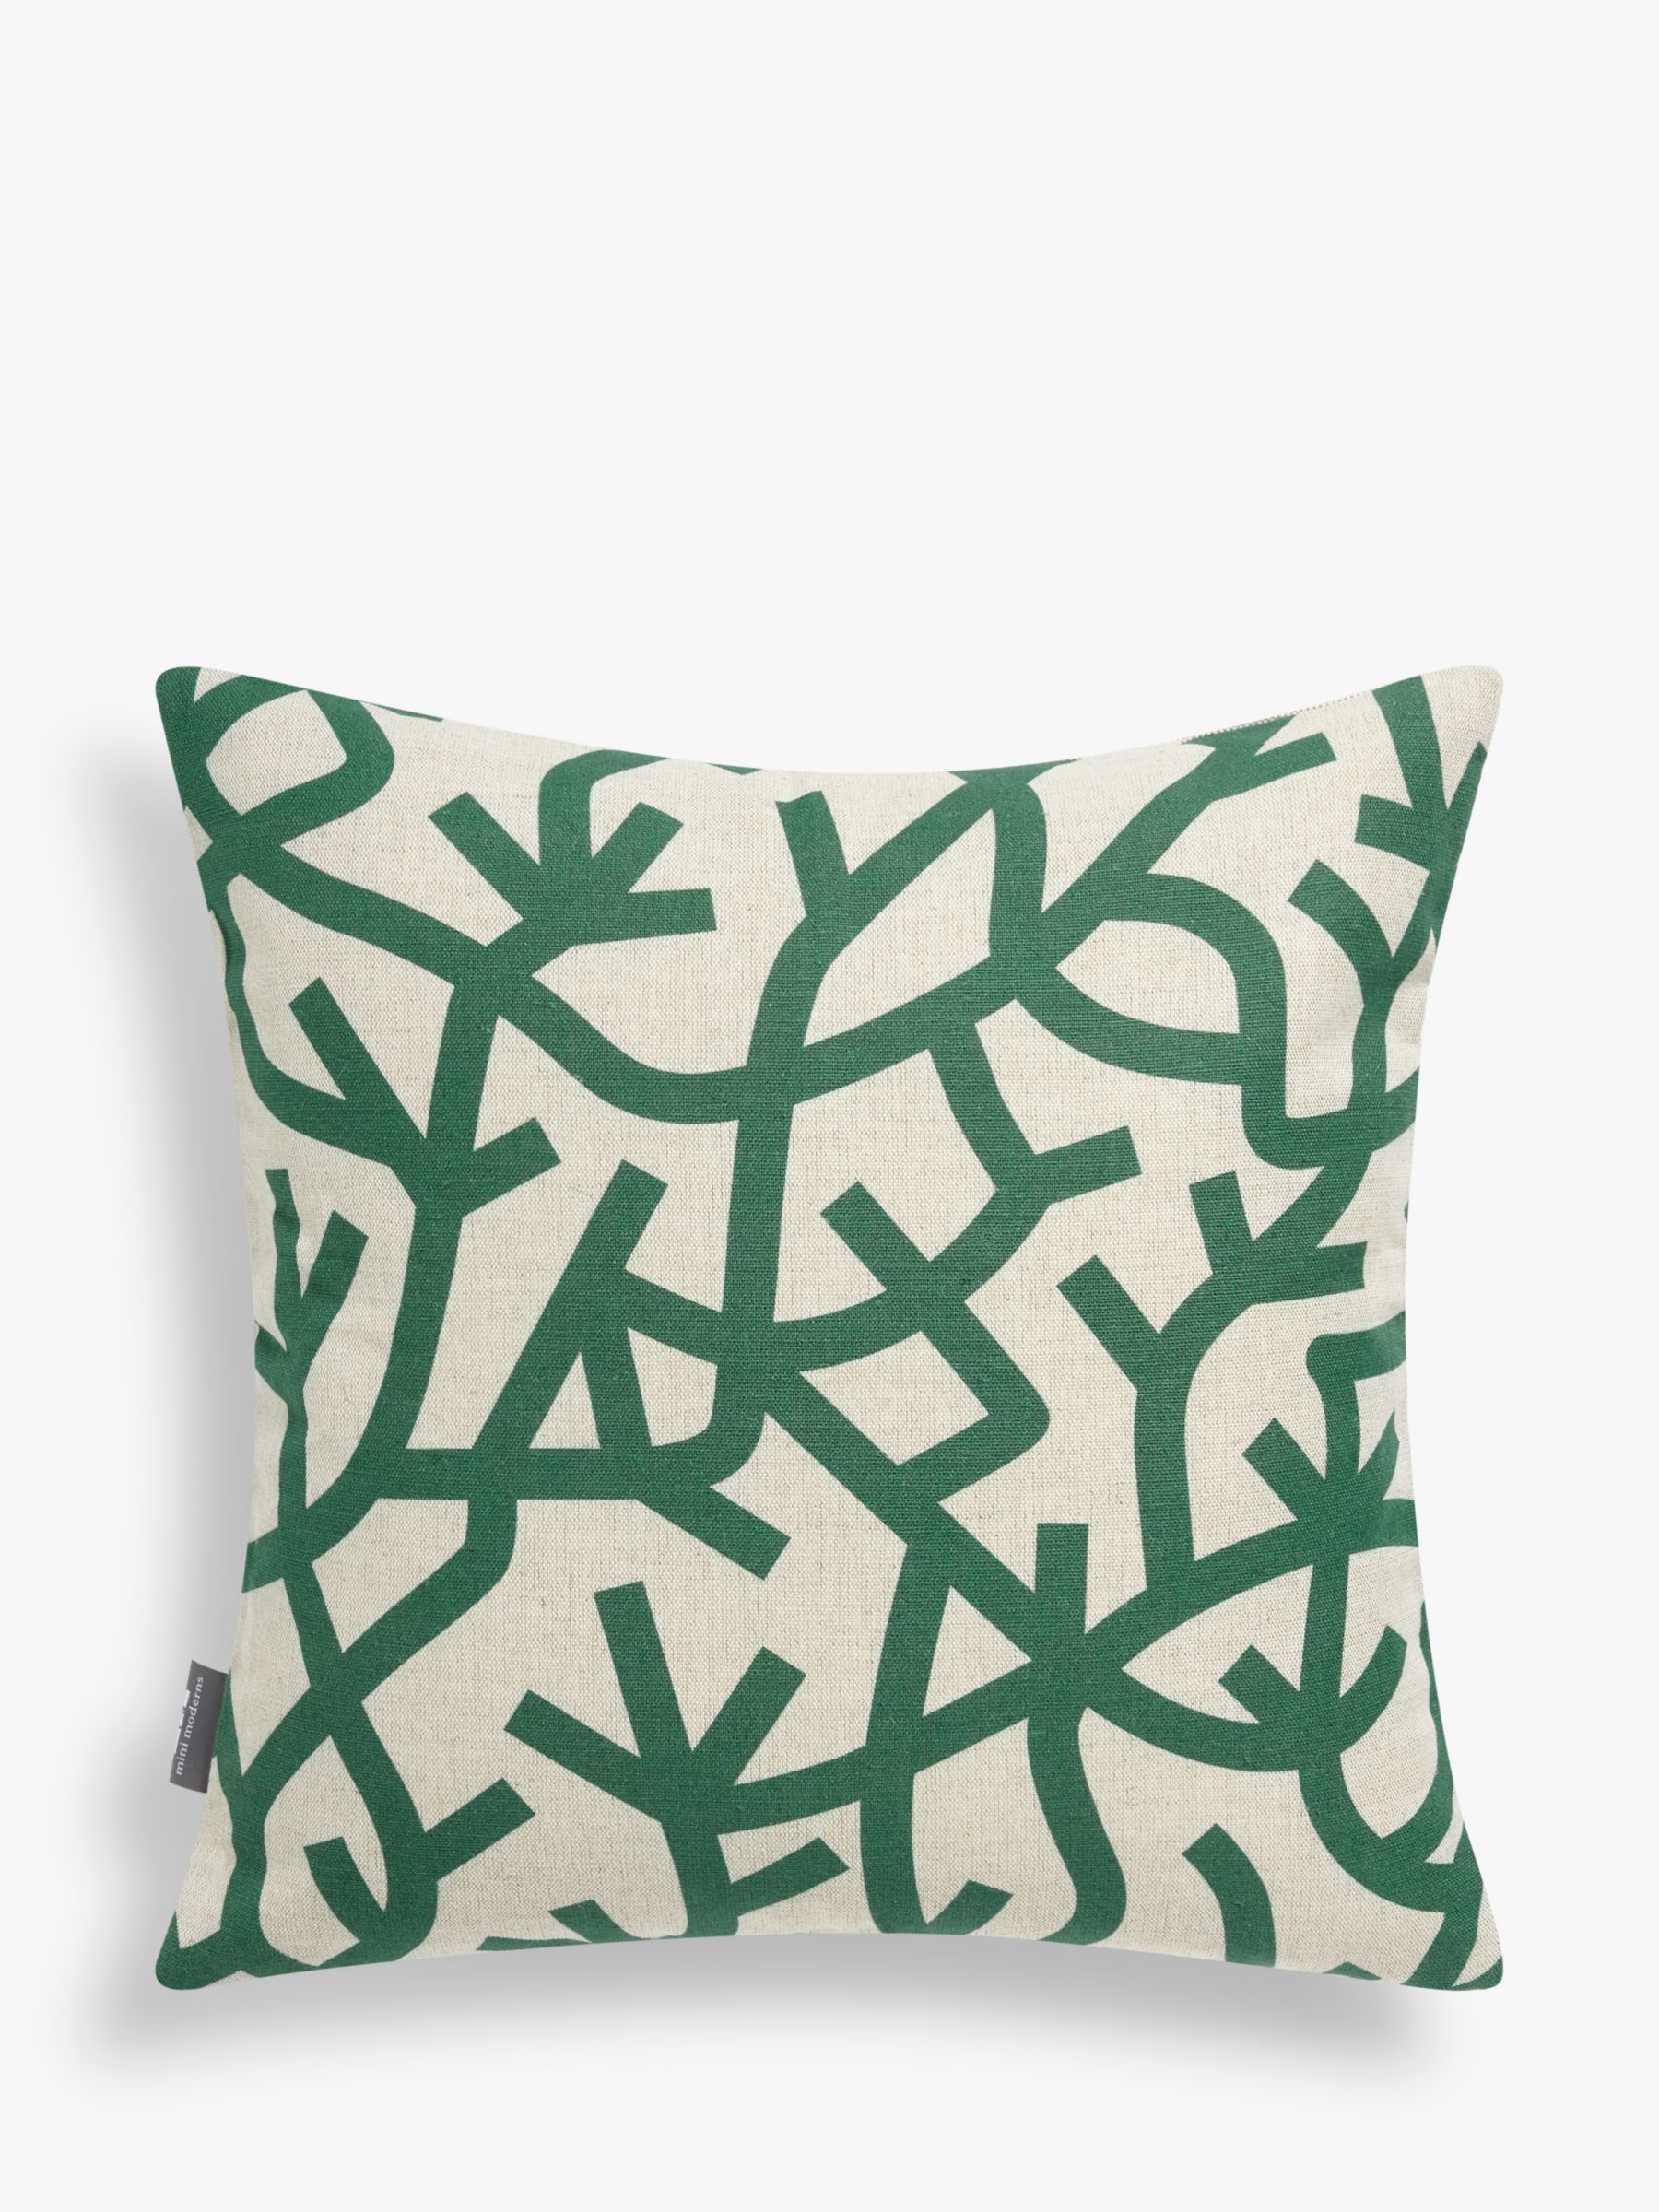 Darjeeling Limited Luggage Pattern Fan Art Throw Pillow for Sale